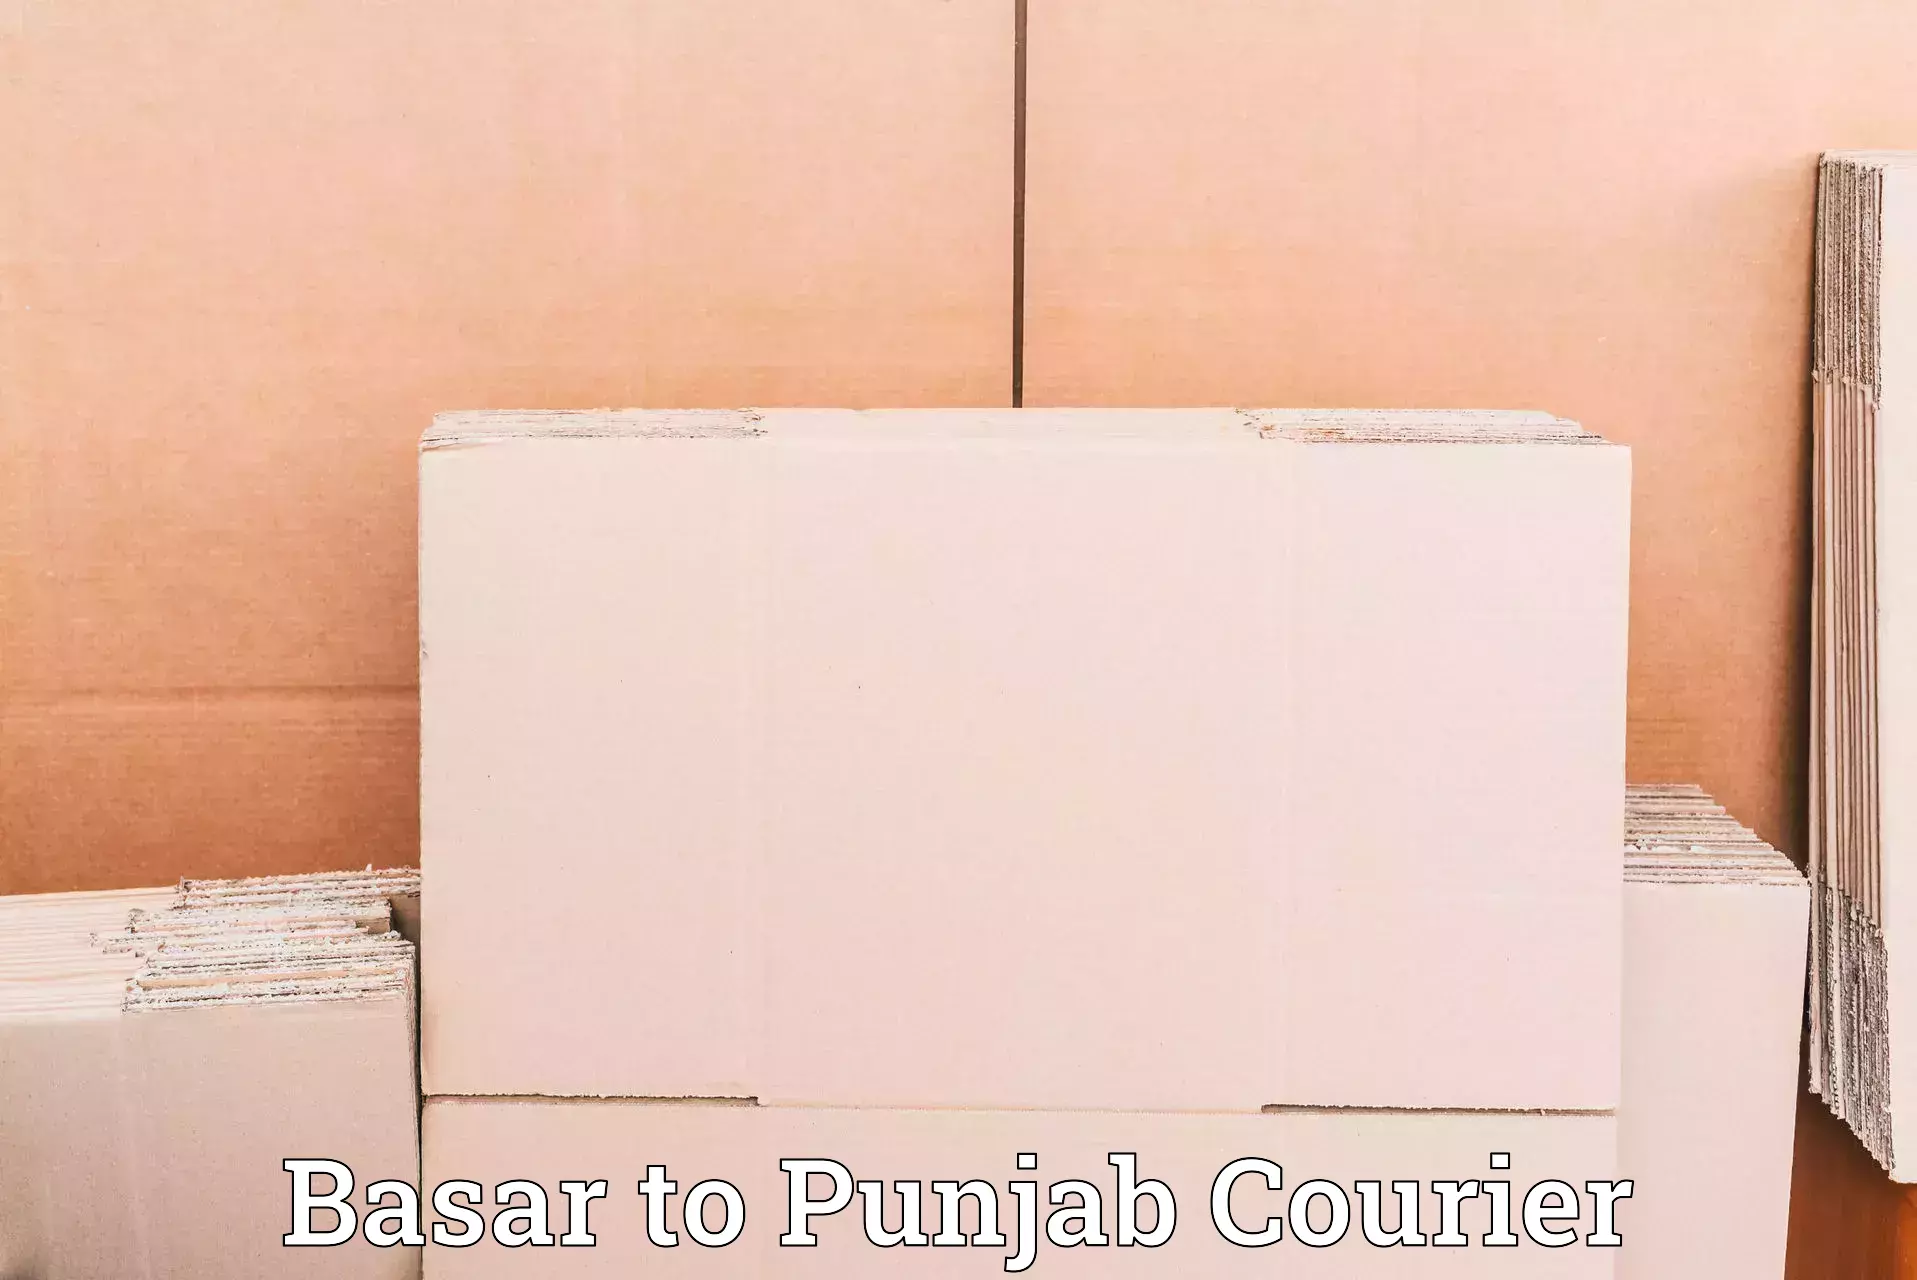 Expedited shipping methods Basar to Punjab